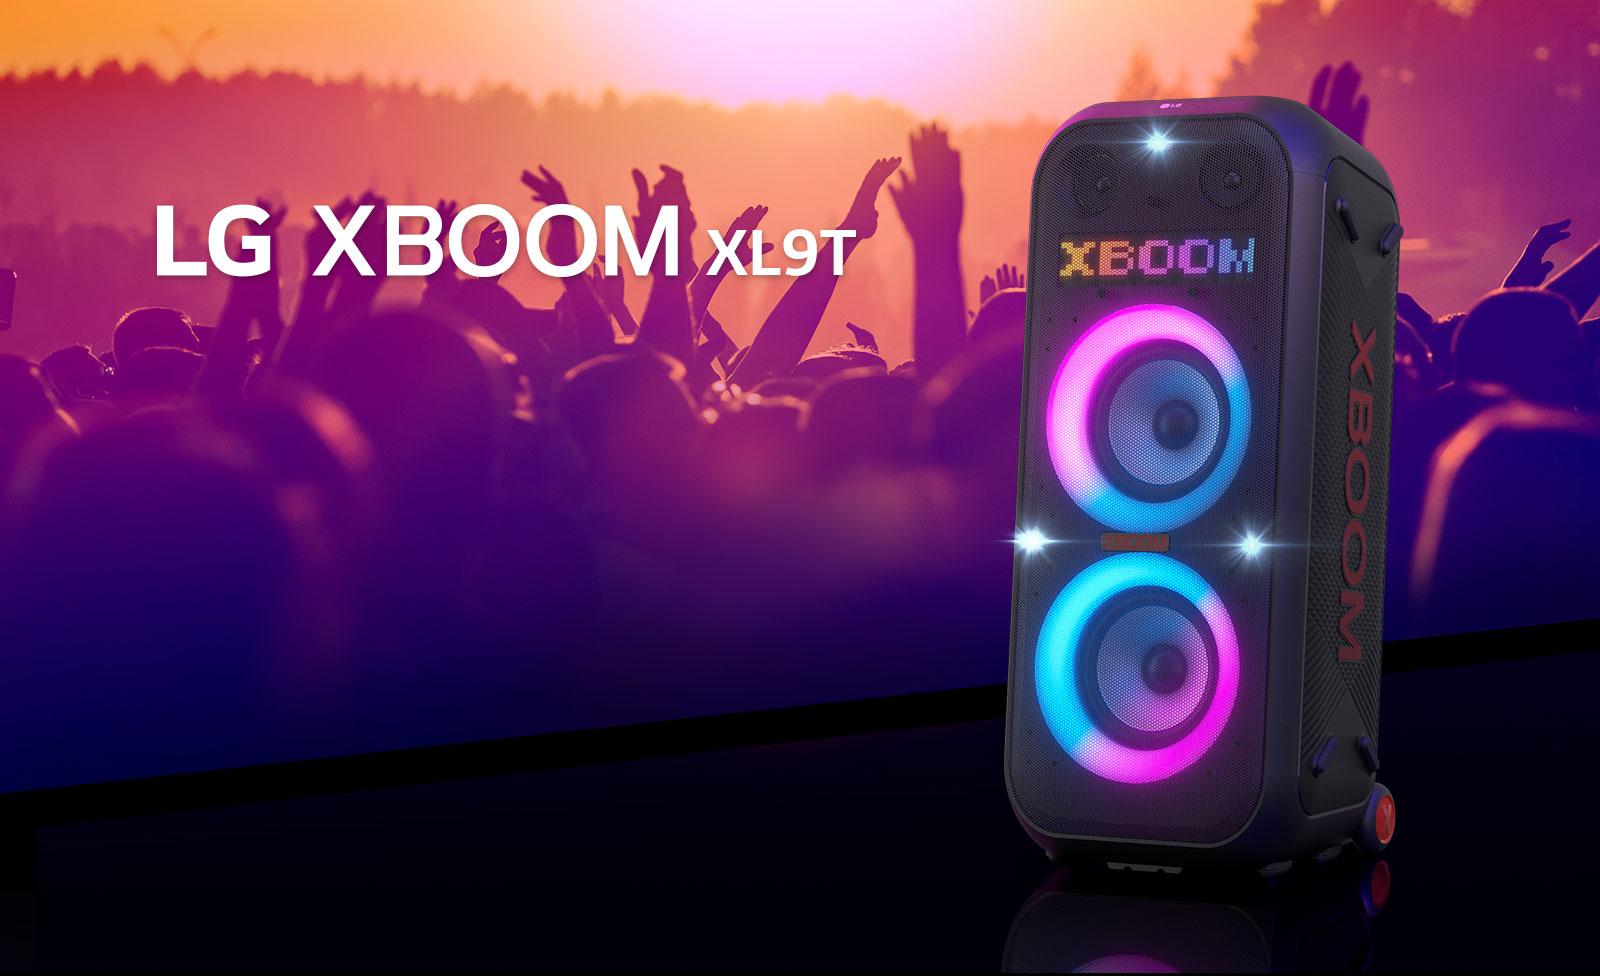 LG XBOOM XL9T е поставен на повърхността с диагонален изглед. Включва се многоцветно осветление и на дисплея се изписва думата „XBOOM“. Зад високоговорителя се виждат силуети на хора, които се забавляват на партито.